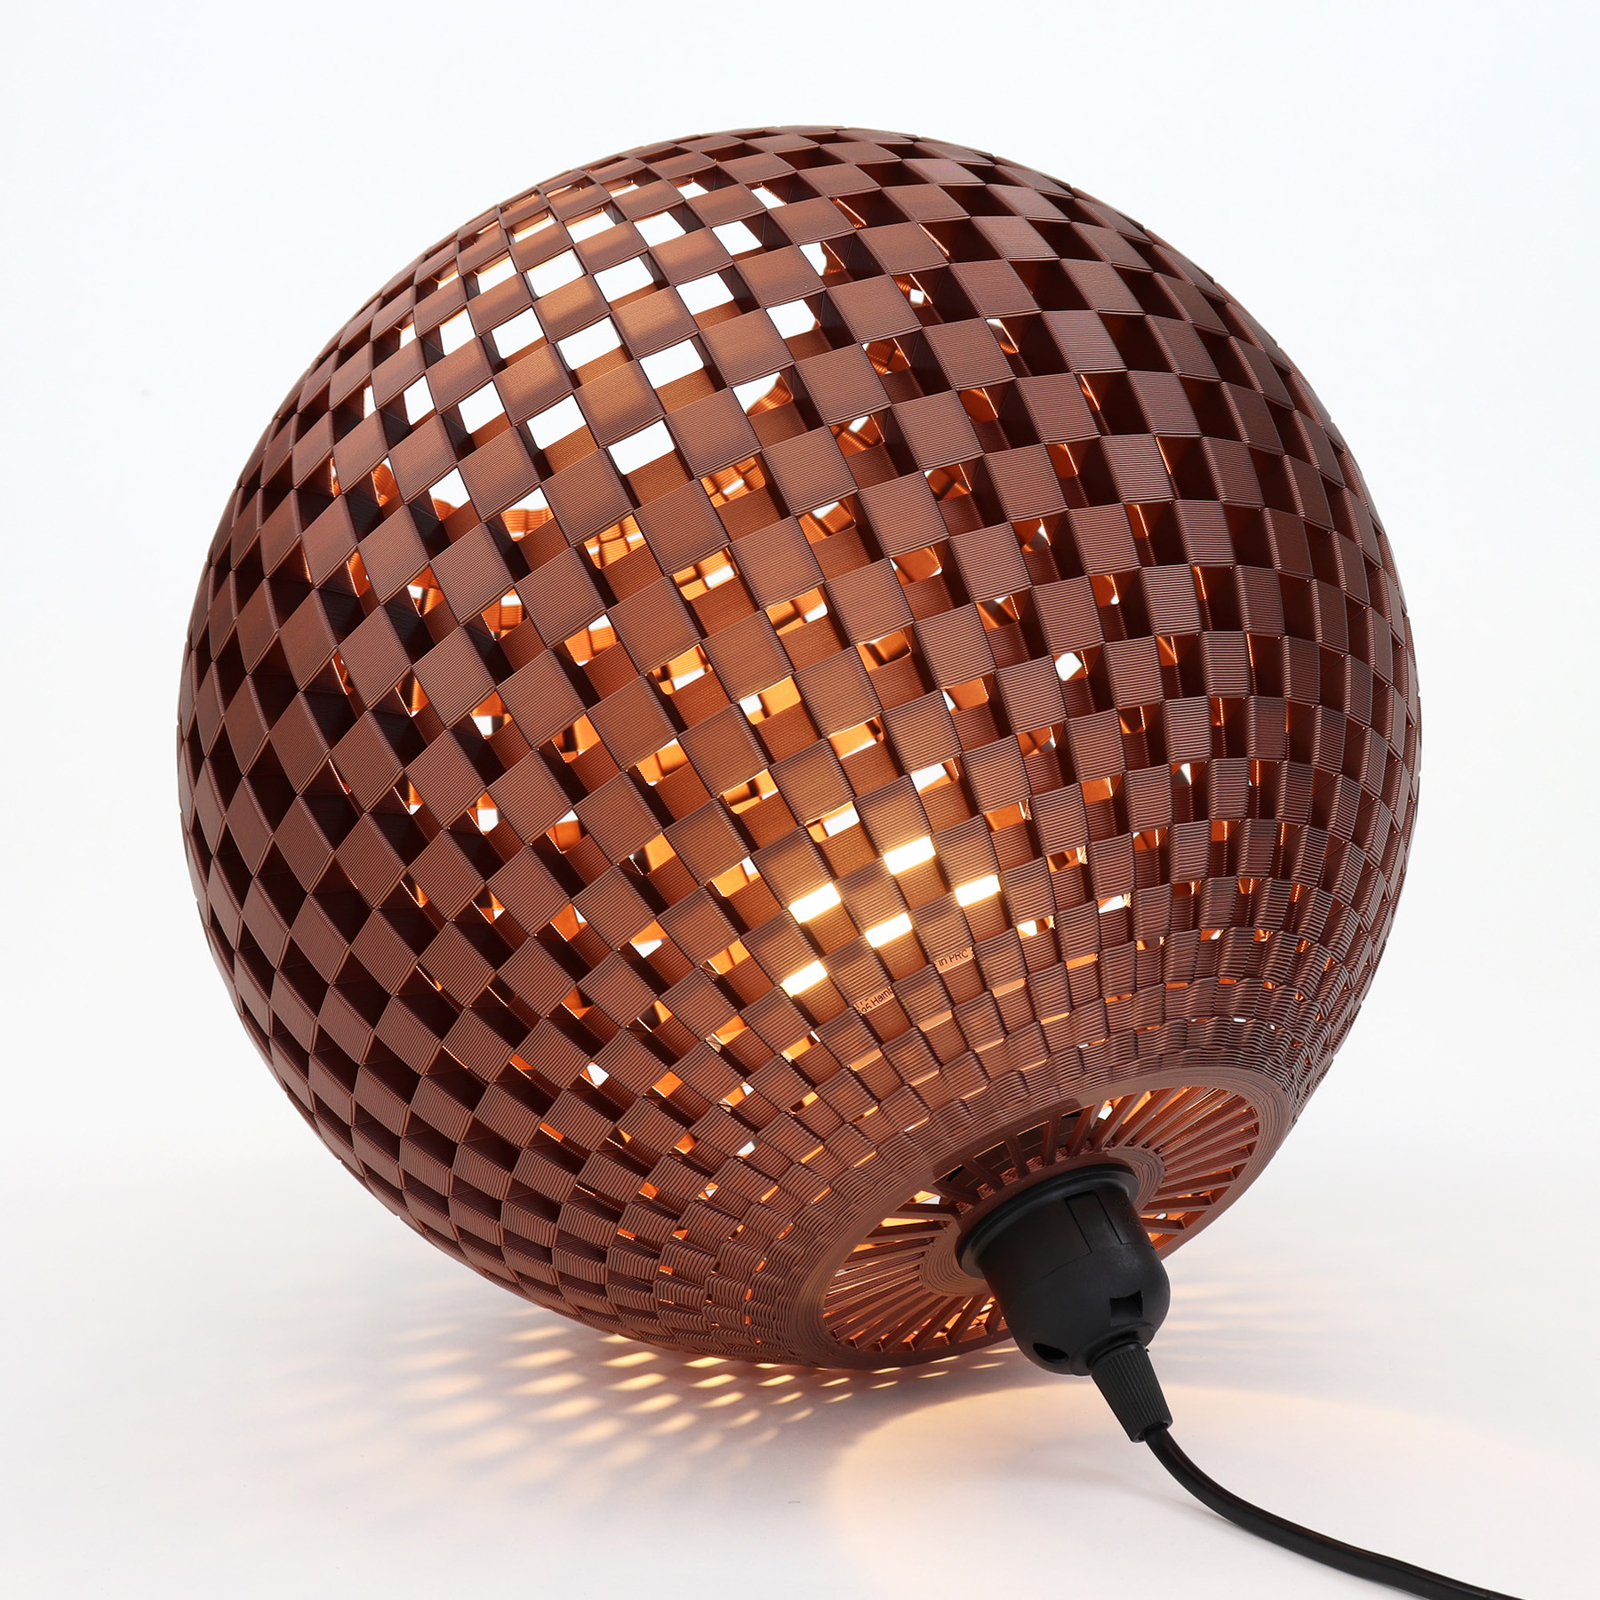 Flechtwerk table lamp, lying sphere, copper